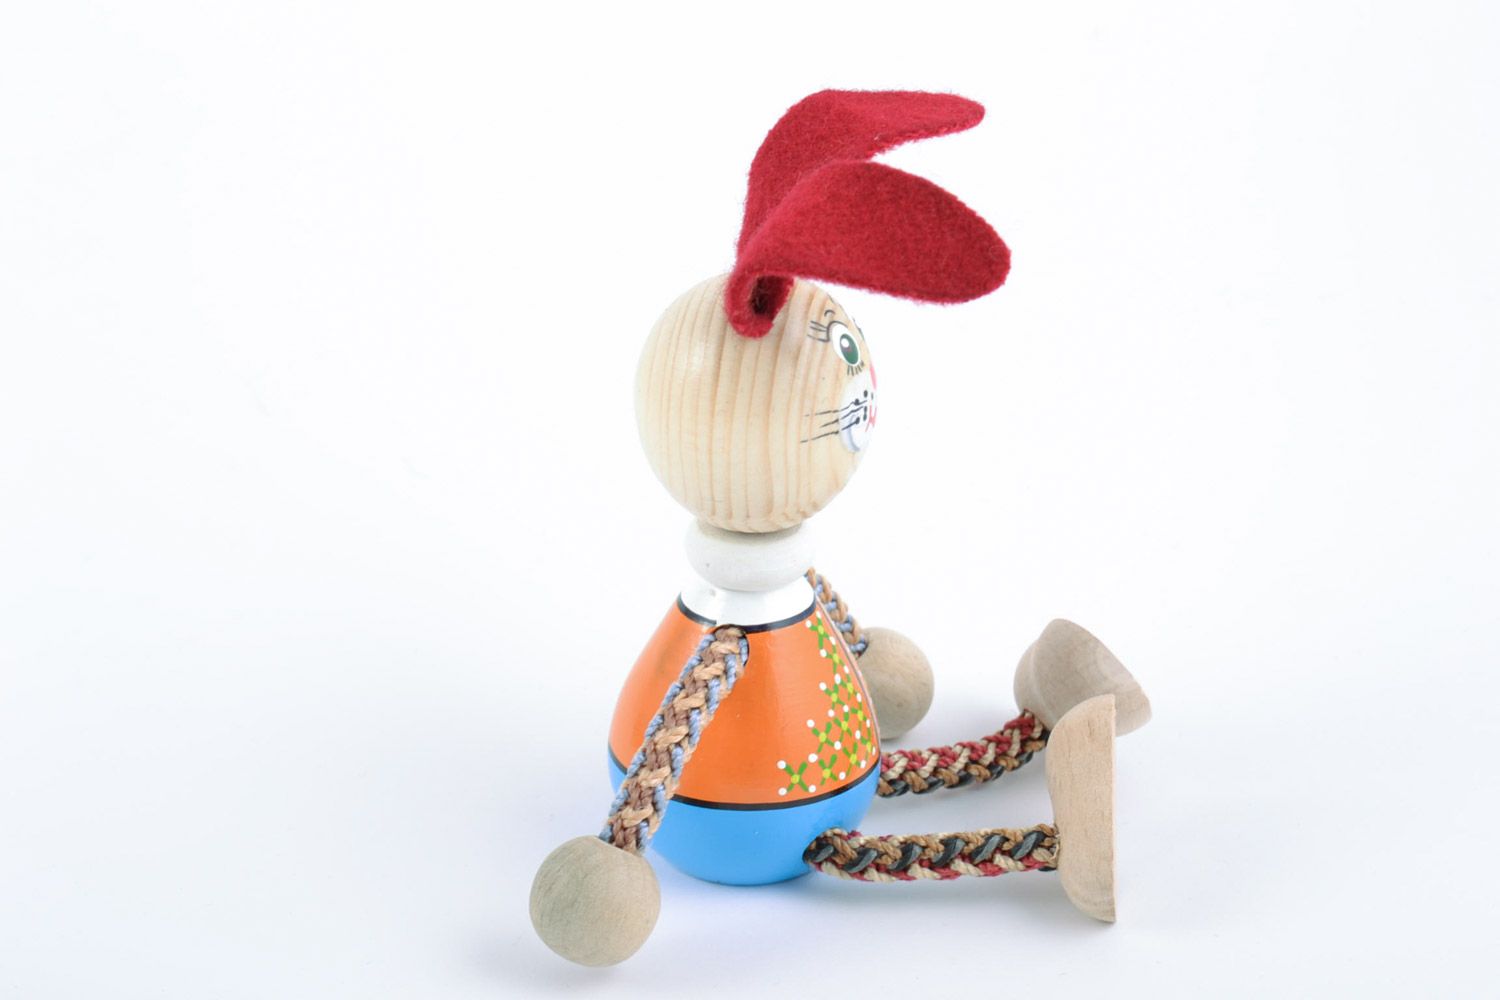 Деревянная игрушка в виде зайчика ручной работы расписанная эко красками фото 3